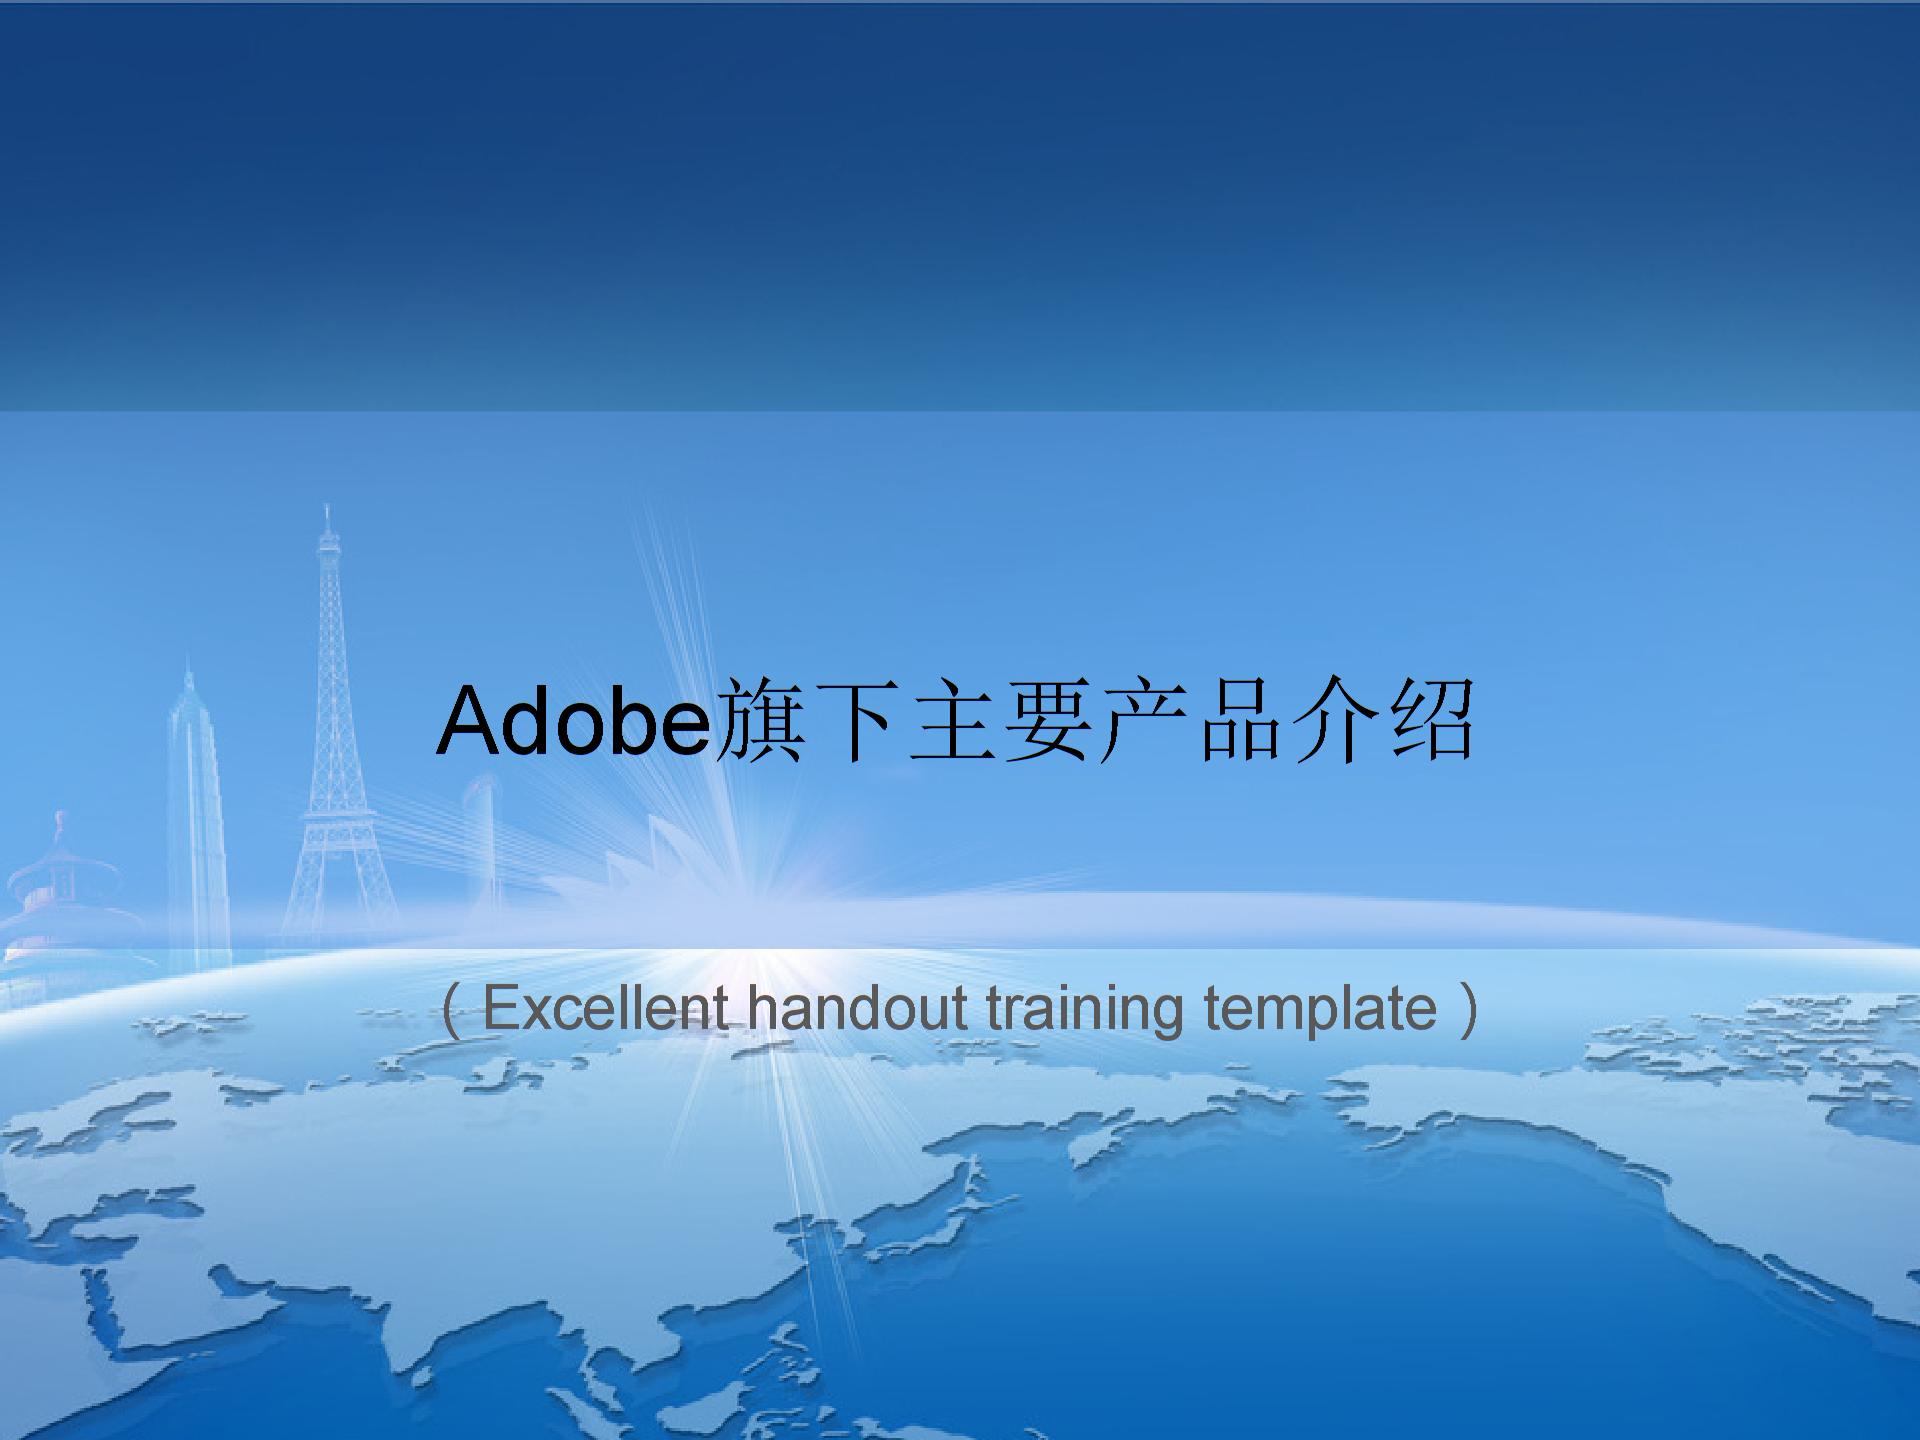 Adobe主要产品介绍课件PPT模板